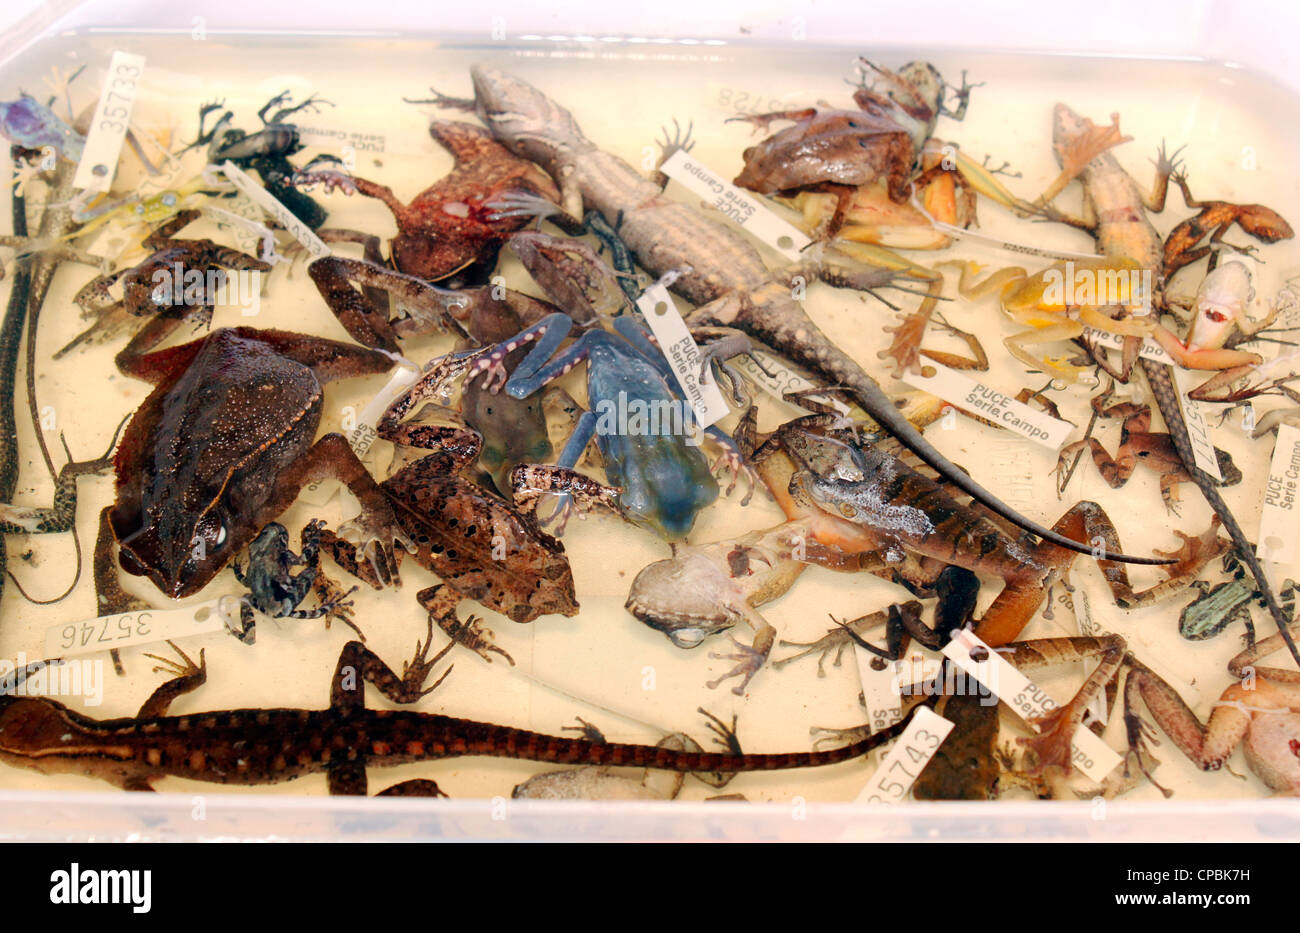 Especímenes preservados de reptiles y anfibios de investigaciones biológicas, recopilados en Ecuador Foto de stock